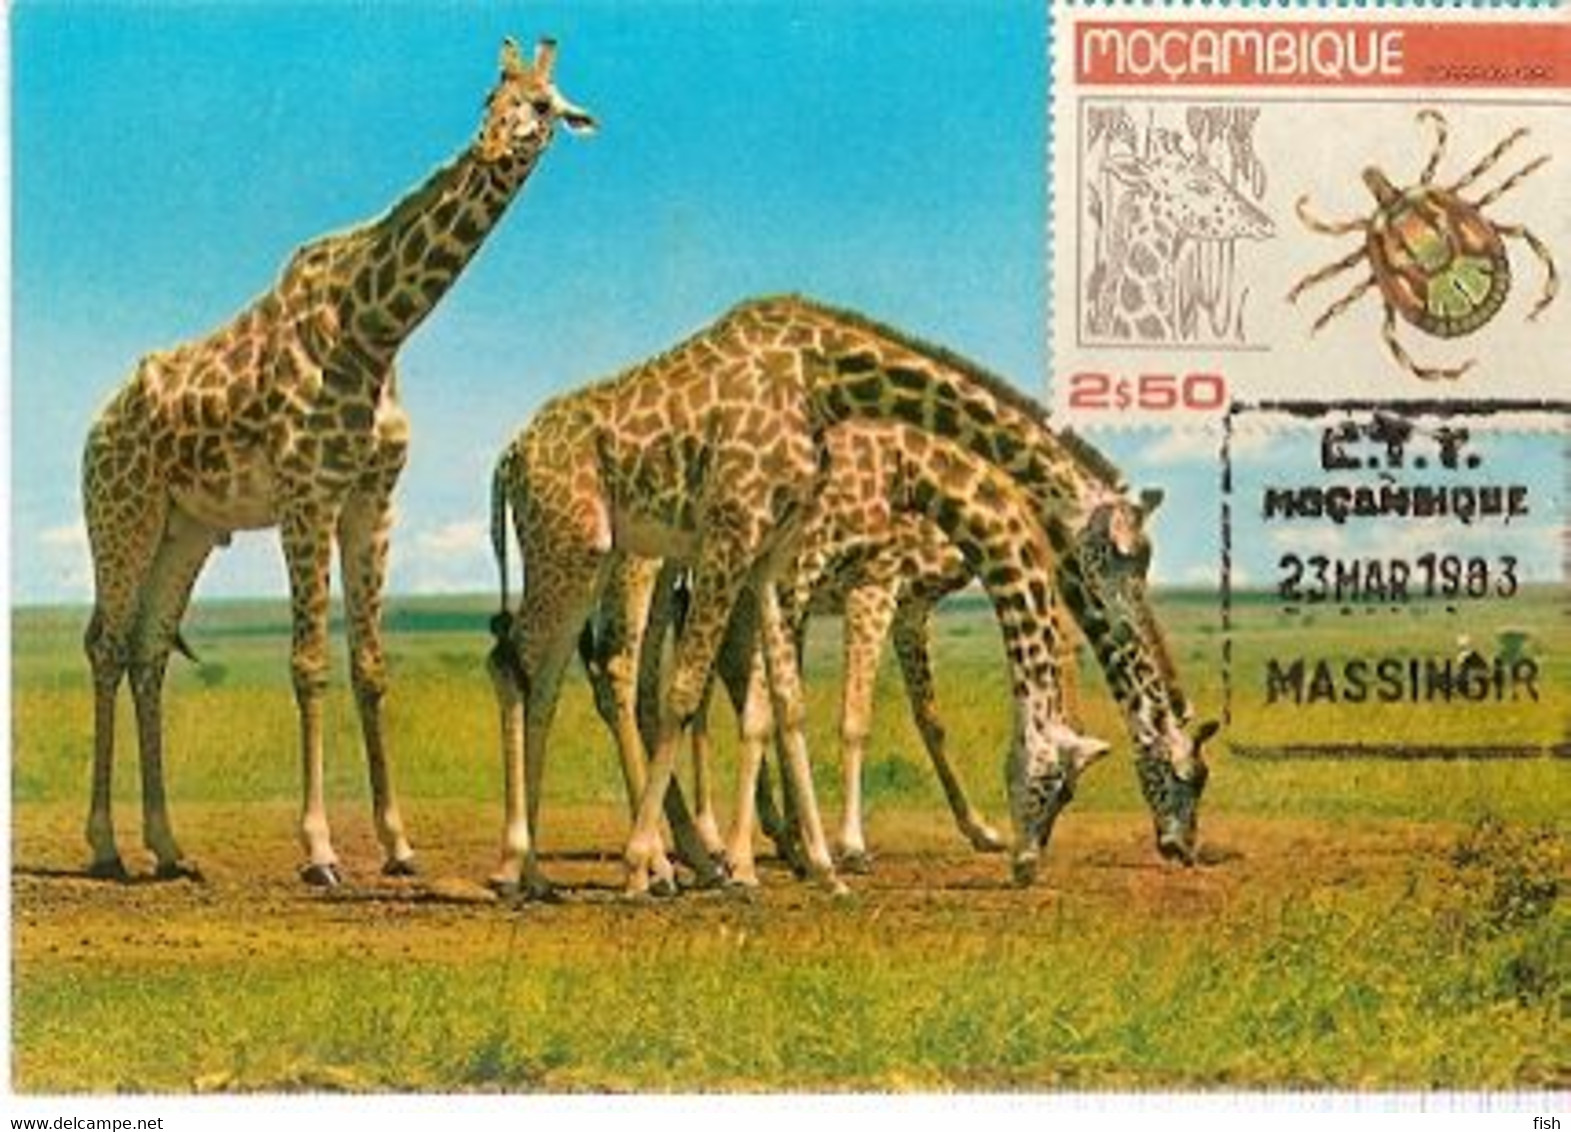 Mozambique & Maximum Card, African Wild Life, Giraffe, Massangir 1983  (65) - Giraffes